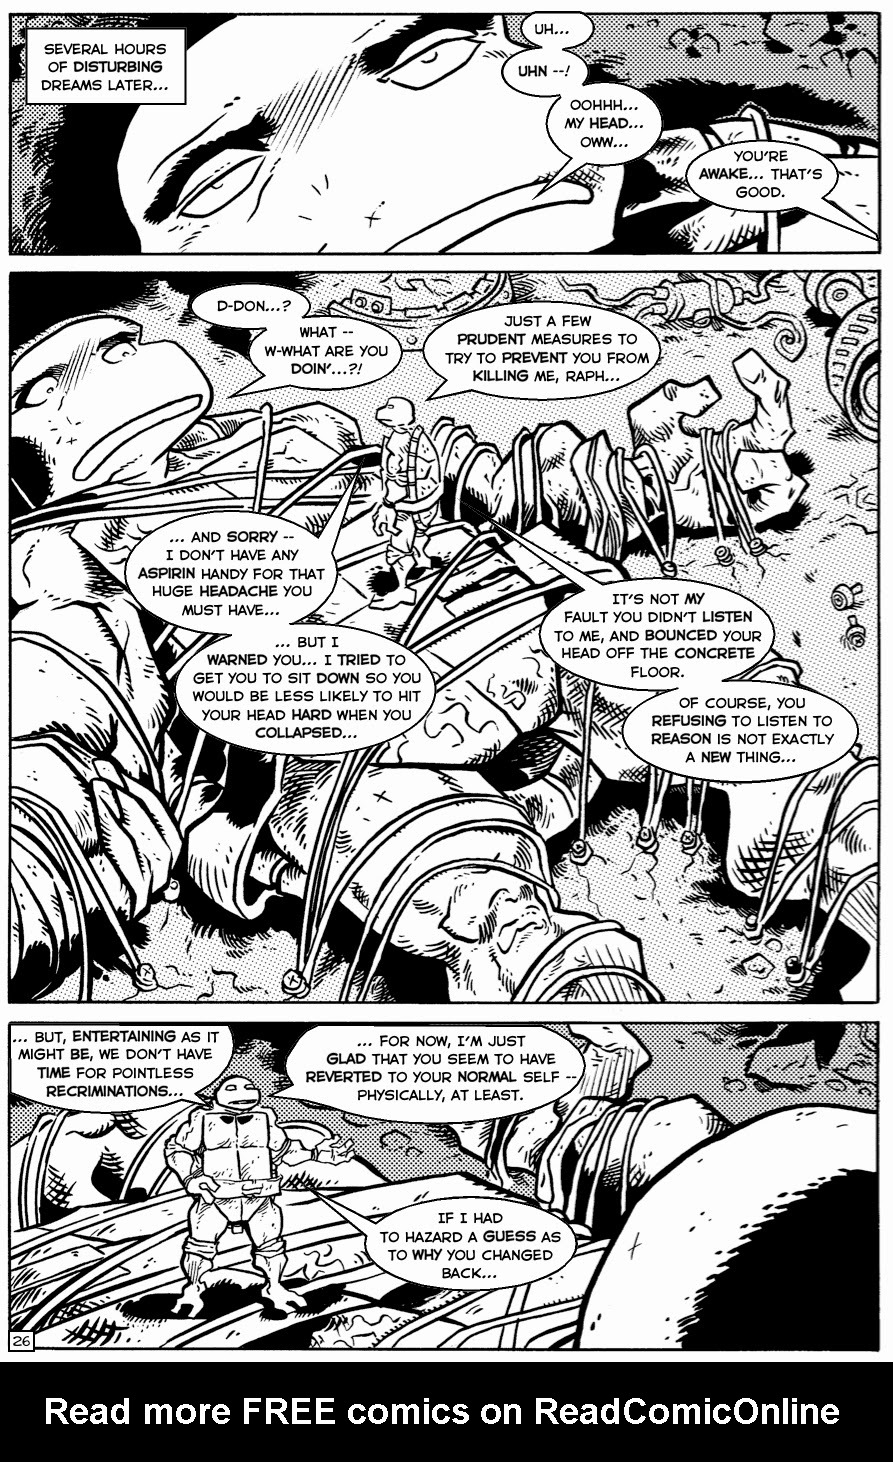 Read online TMNT: Teenage Mutant Ninja Turtles comic -  Issue #32 - 28